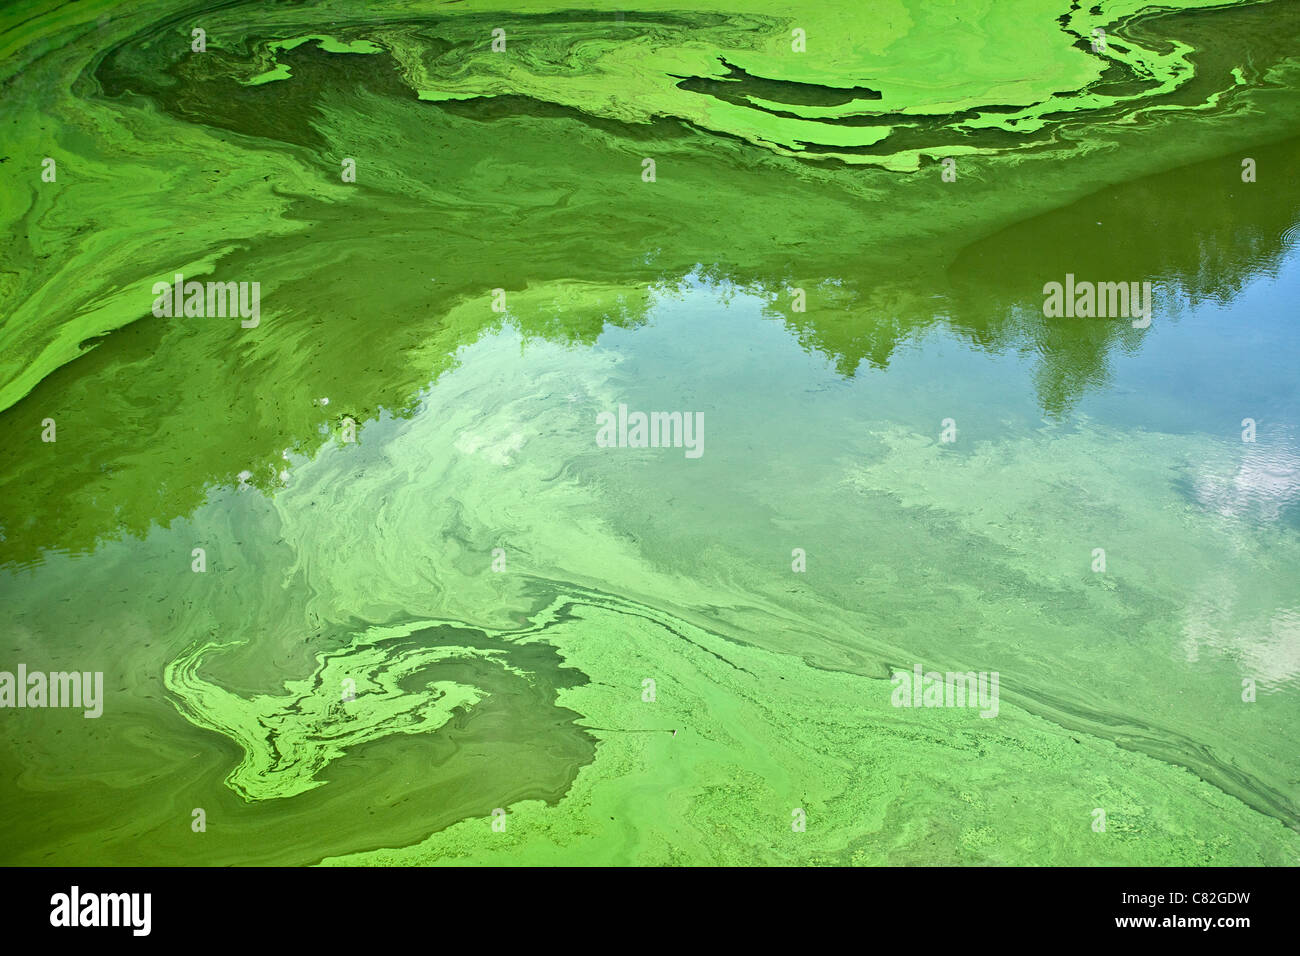 Les cyanobactéries ou algues bleu-vert", qui se développent à la surface d'une rivière à débit lent, à l'été (Puy-de-Dôme - France). Banque D'Images